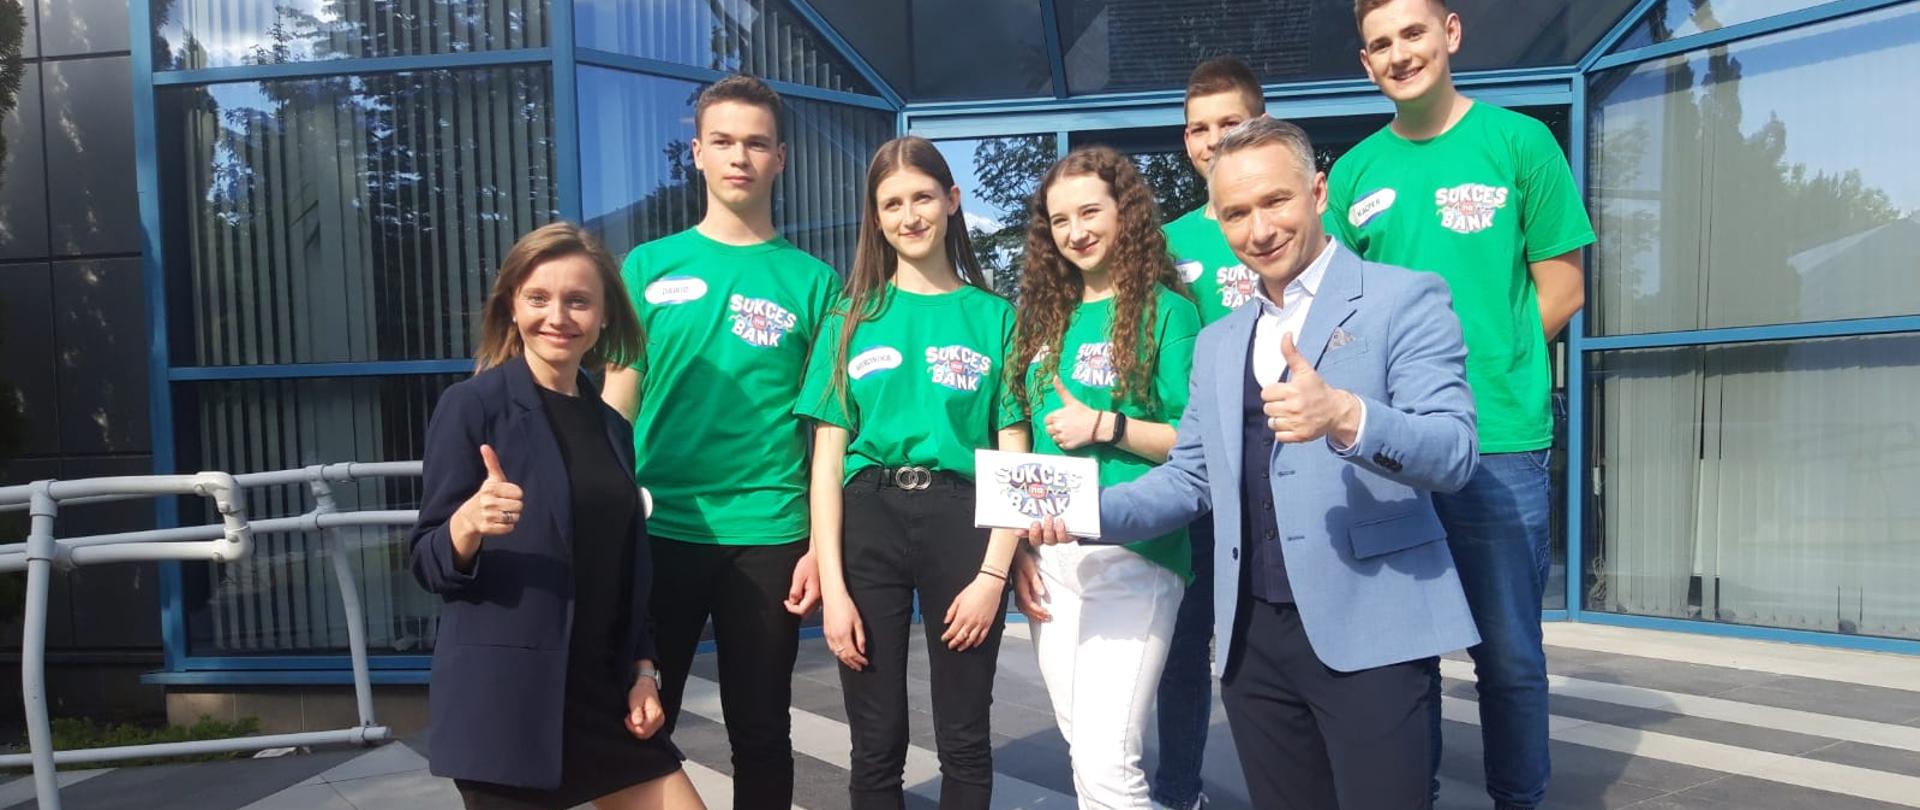 Uczniowie jasielskiego Ekonomika w ćwierćfinałach konkursu "SUkces Na Bank"
